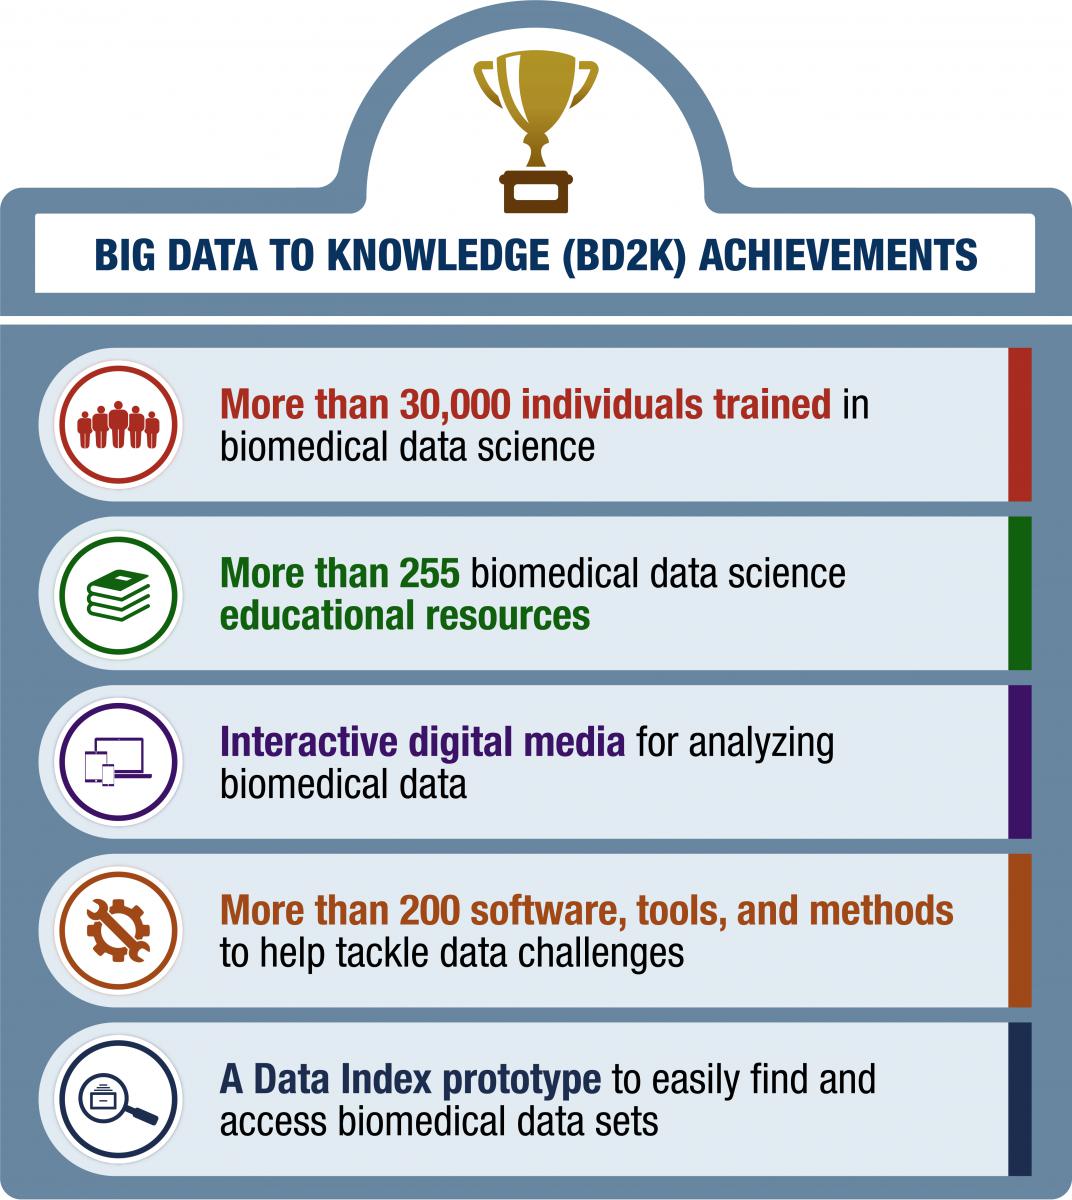 BD2K Achievements Infographic